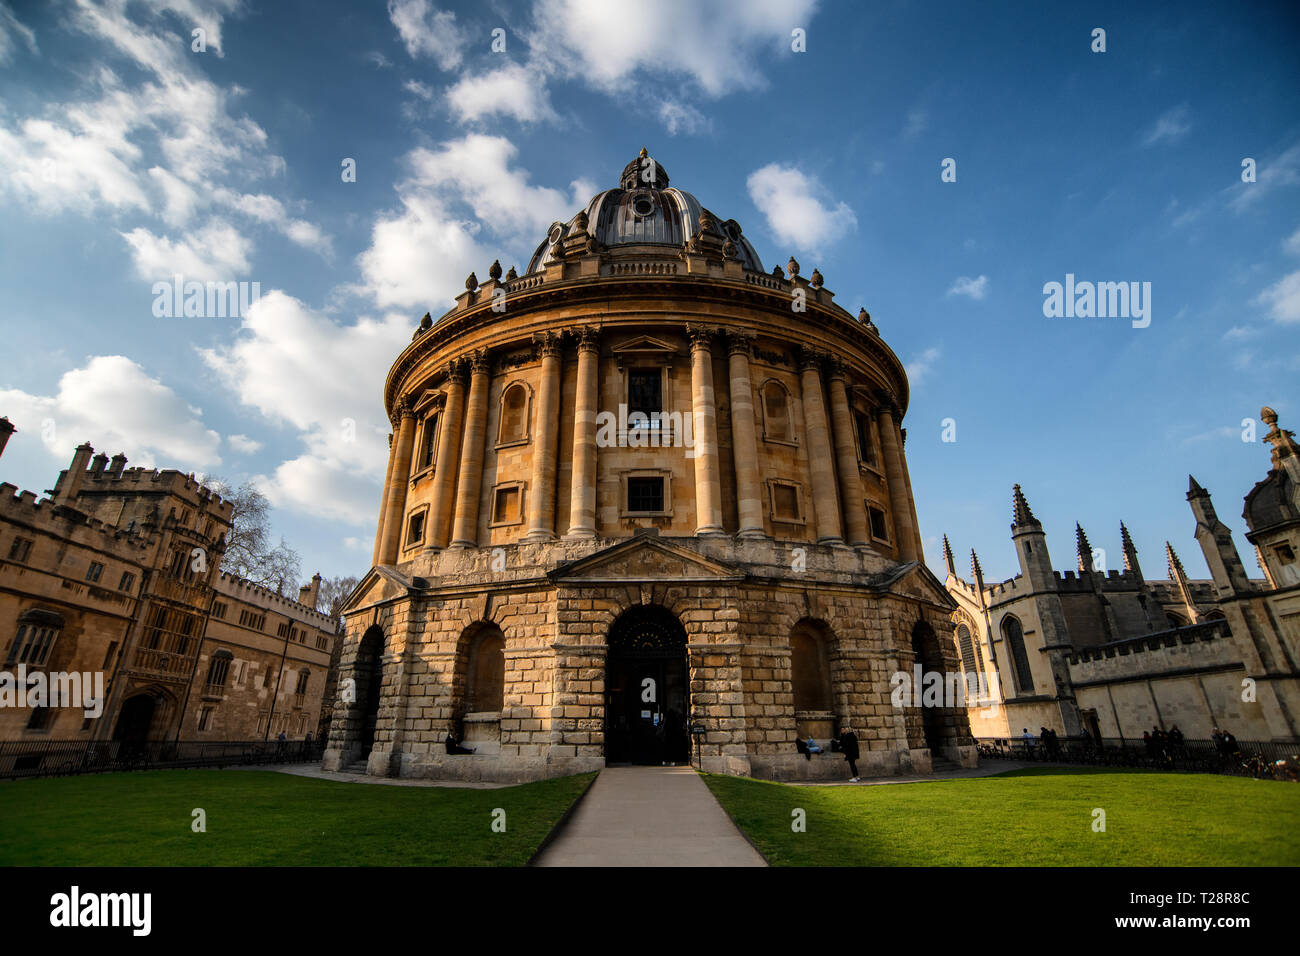 Vereinigtes Königreich, Oxford, Radcliffe Camera, 18. Jahrhundert, Palladio-Stil wissenschaftliche Bibliothek und Lesesaal, entworfen von James Gibbs. Stockfoto